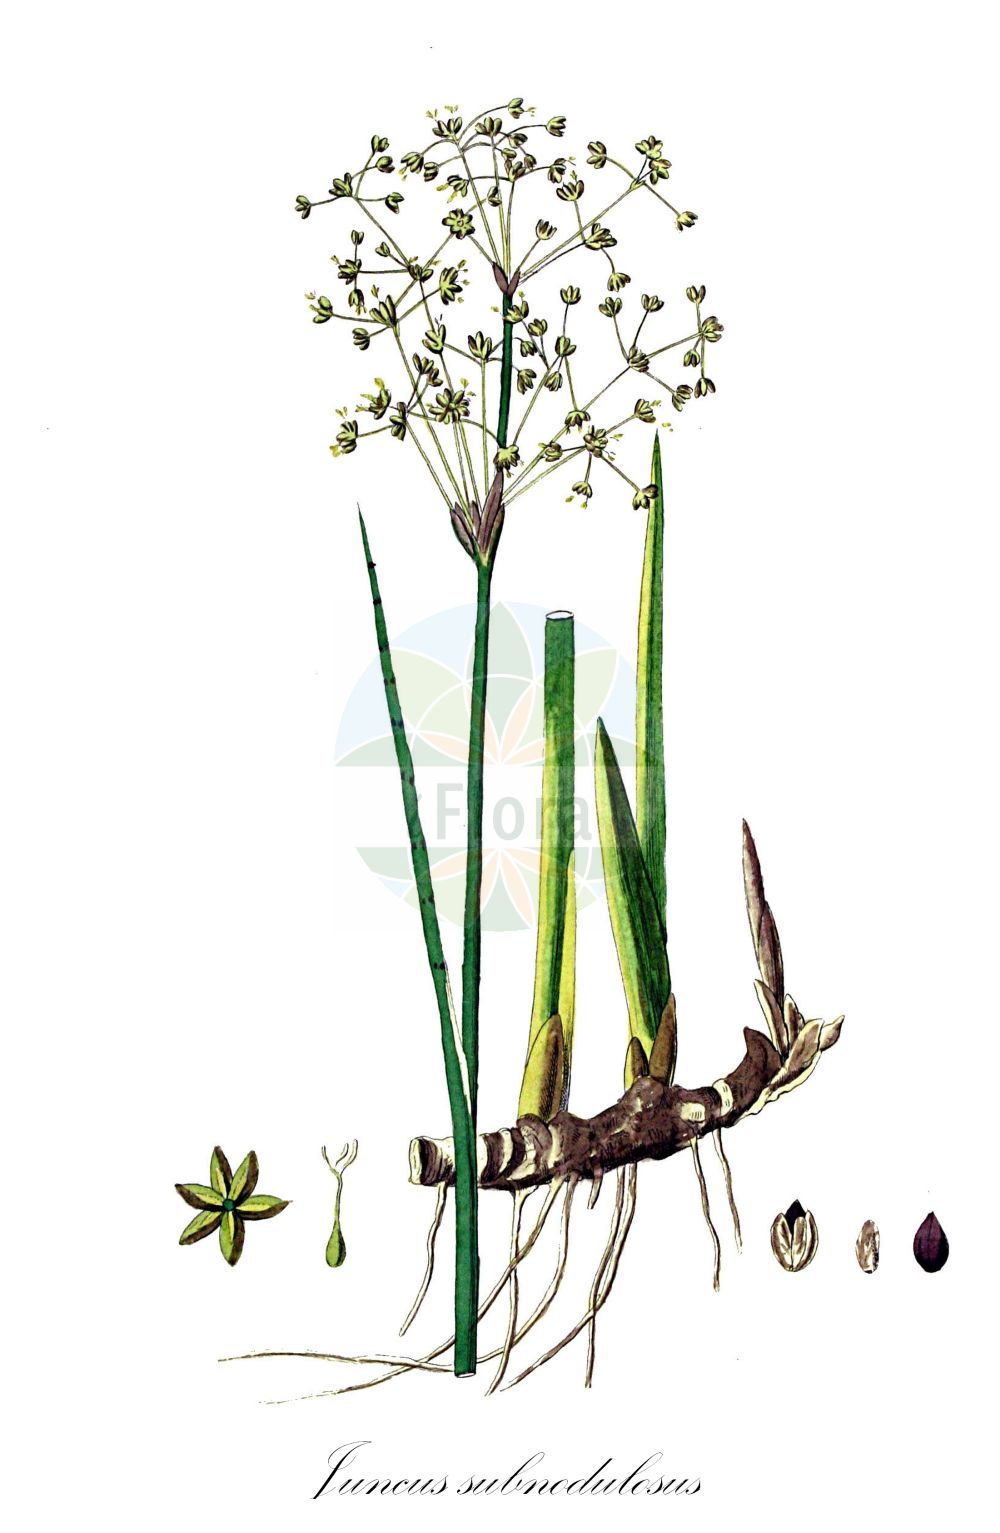 Historische Abbildung von Juncus subnodulosus (Stumpfblütige Binse - Blunt-flowered Rush). Das Bild zeigt Blatt, Bluete, Frucht und Same. ---- Historical Drawing of Juncus subnodulosus (Stumpfblütige Binse - Blunt-flowered Rush). The image is showing leaf, flower, fruit and seed.(Juncus subnodulosus,Stumpfblütige Binse,Blunt-flowered Rush,Juncus bifolius,Juncus divergens,Juncus neesii,Juncus obtusatus,Juncus obtusiflorus,Juncus retroflexus,Juncus subnodulosus,Juncus subnodulosus var. condensatus,Stumpfbluetige Binse,Knoetchen-Simse,Knoten-Binse,Blunt-flowered Rush,Bluntflower Rush,Juncus,Binse,Rush,Juncaceae,Binsengewächse,Rush family,Blatt,Bluete,Frucht,Same,leaf,flower,fruit,seed,Kops (1800-1934))